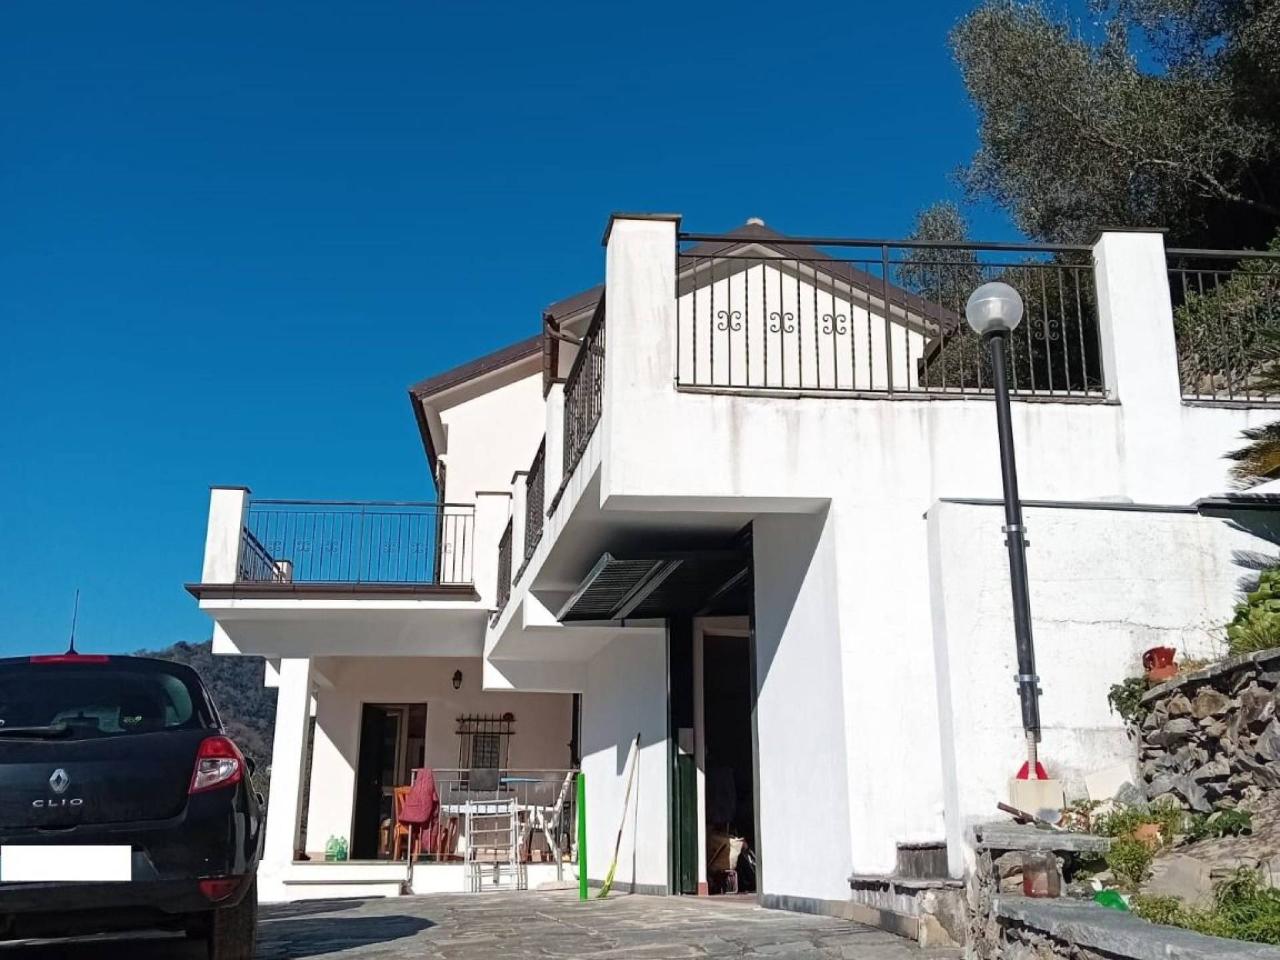 Villa in vendita a Avegno